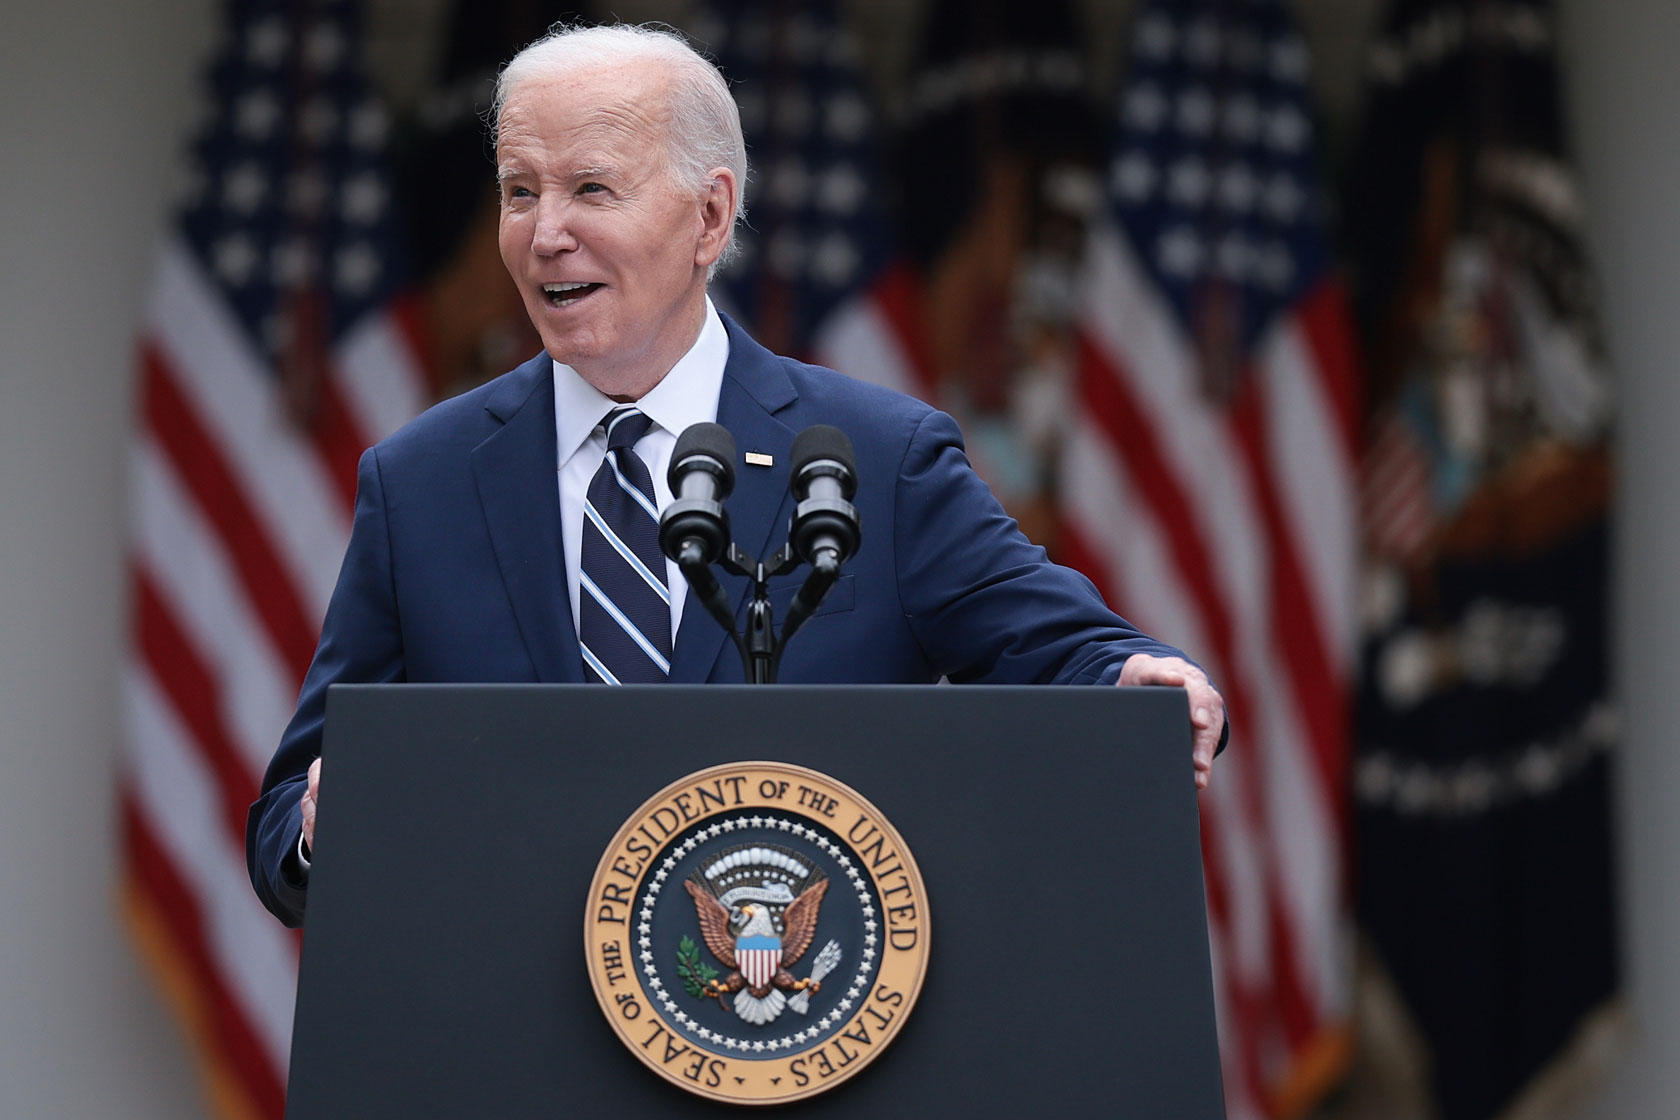 President Joe Biden stands behind a podium.